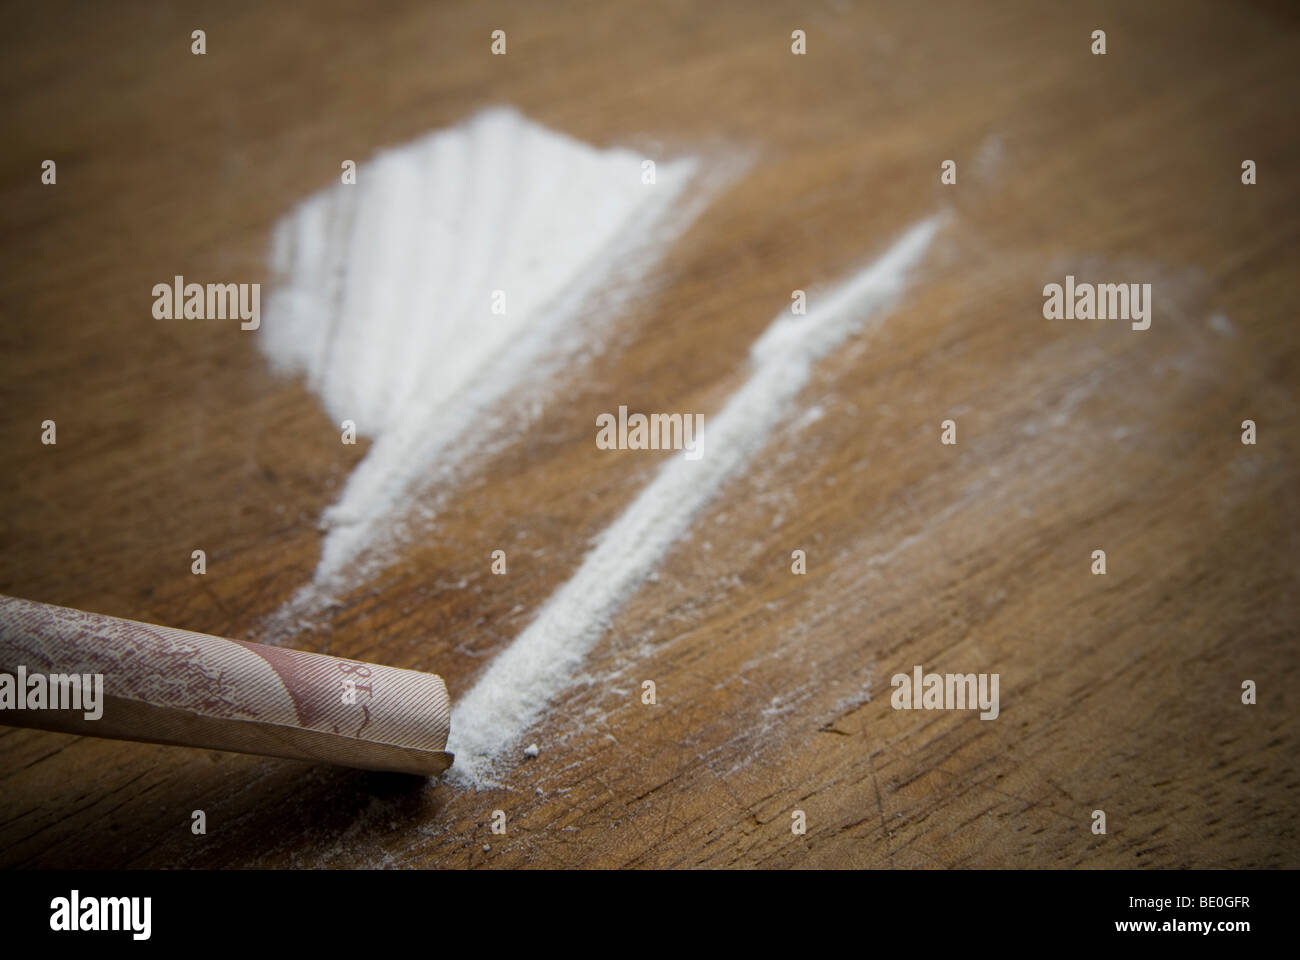 Farmaci, una persona manipolazione farmaci di classe A. La cocaina Foto Stock